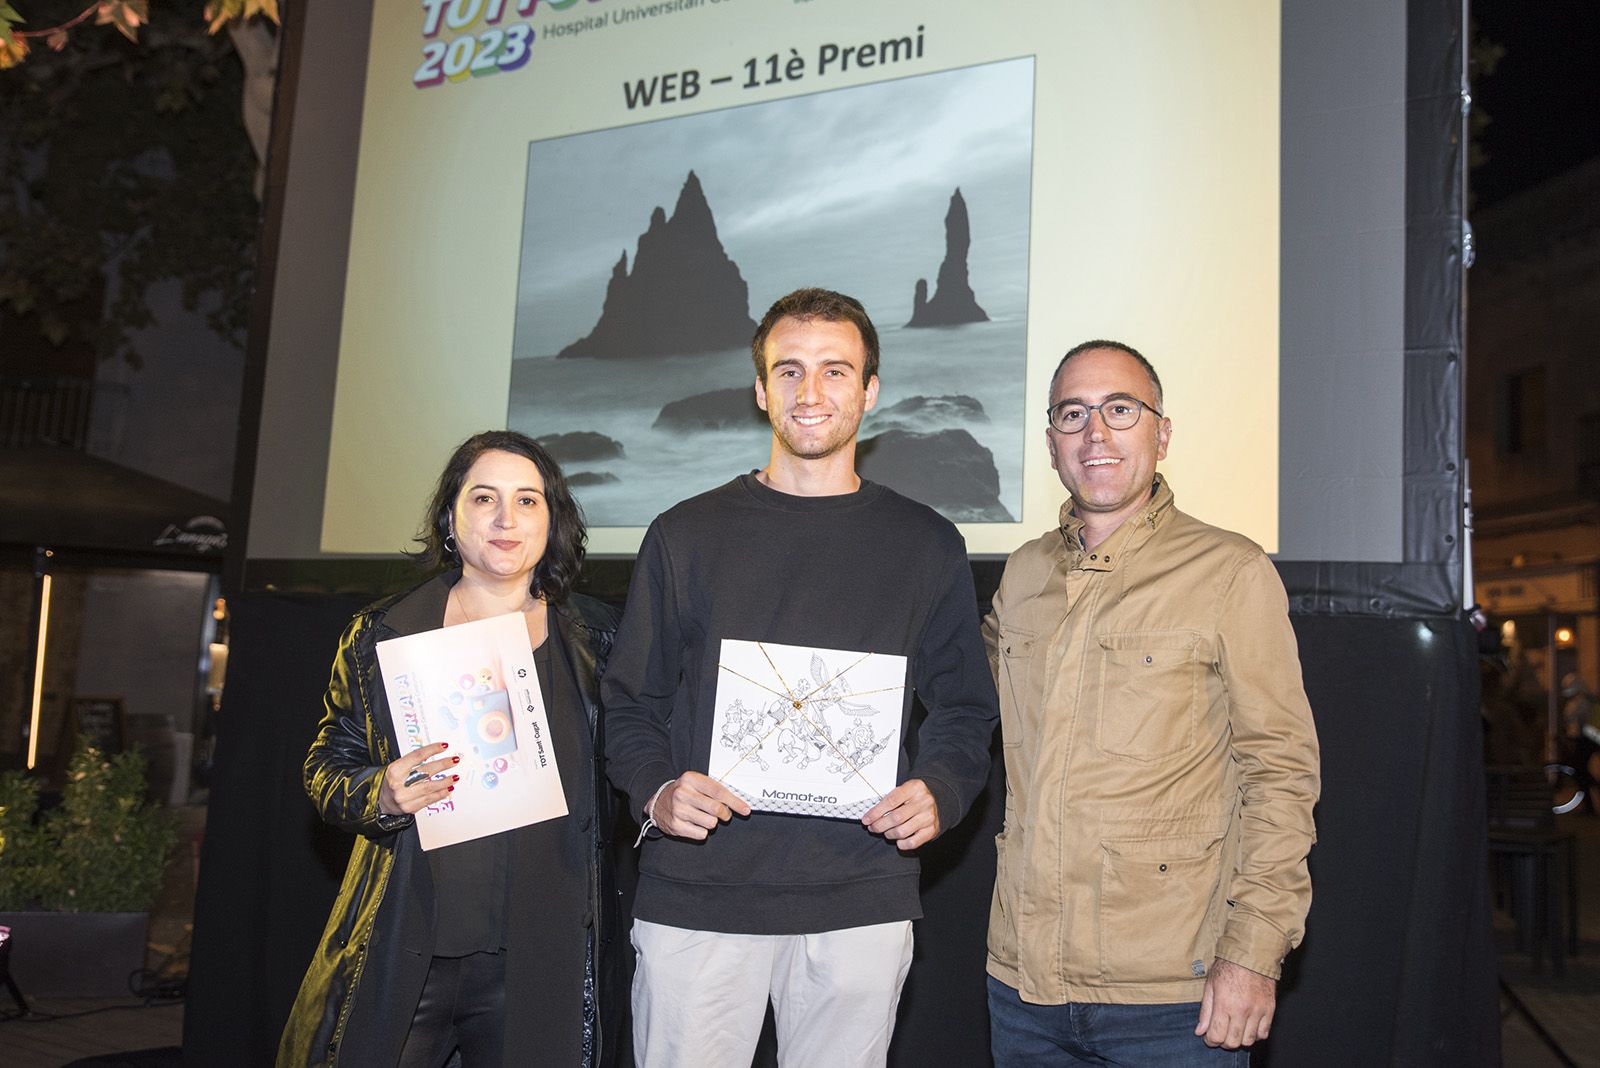 11è premi categoria web:  El meu refugi · Islàndia d'Ivan Villarejo Angulo. FOTO: Bernat Millet.